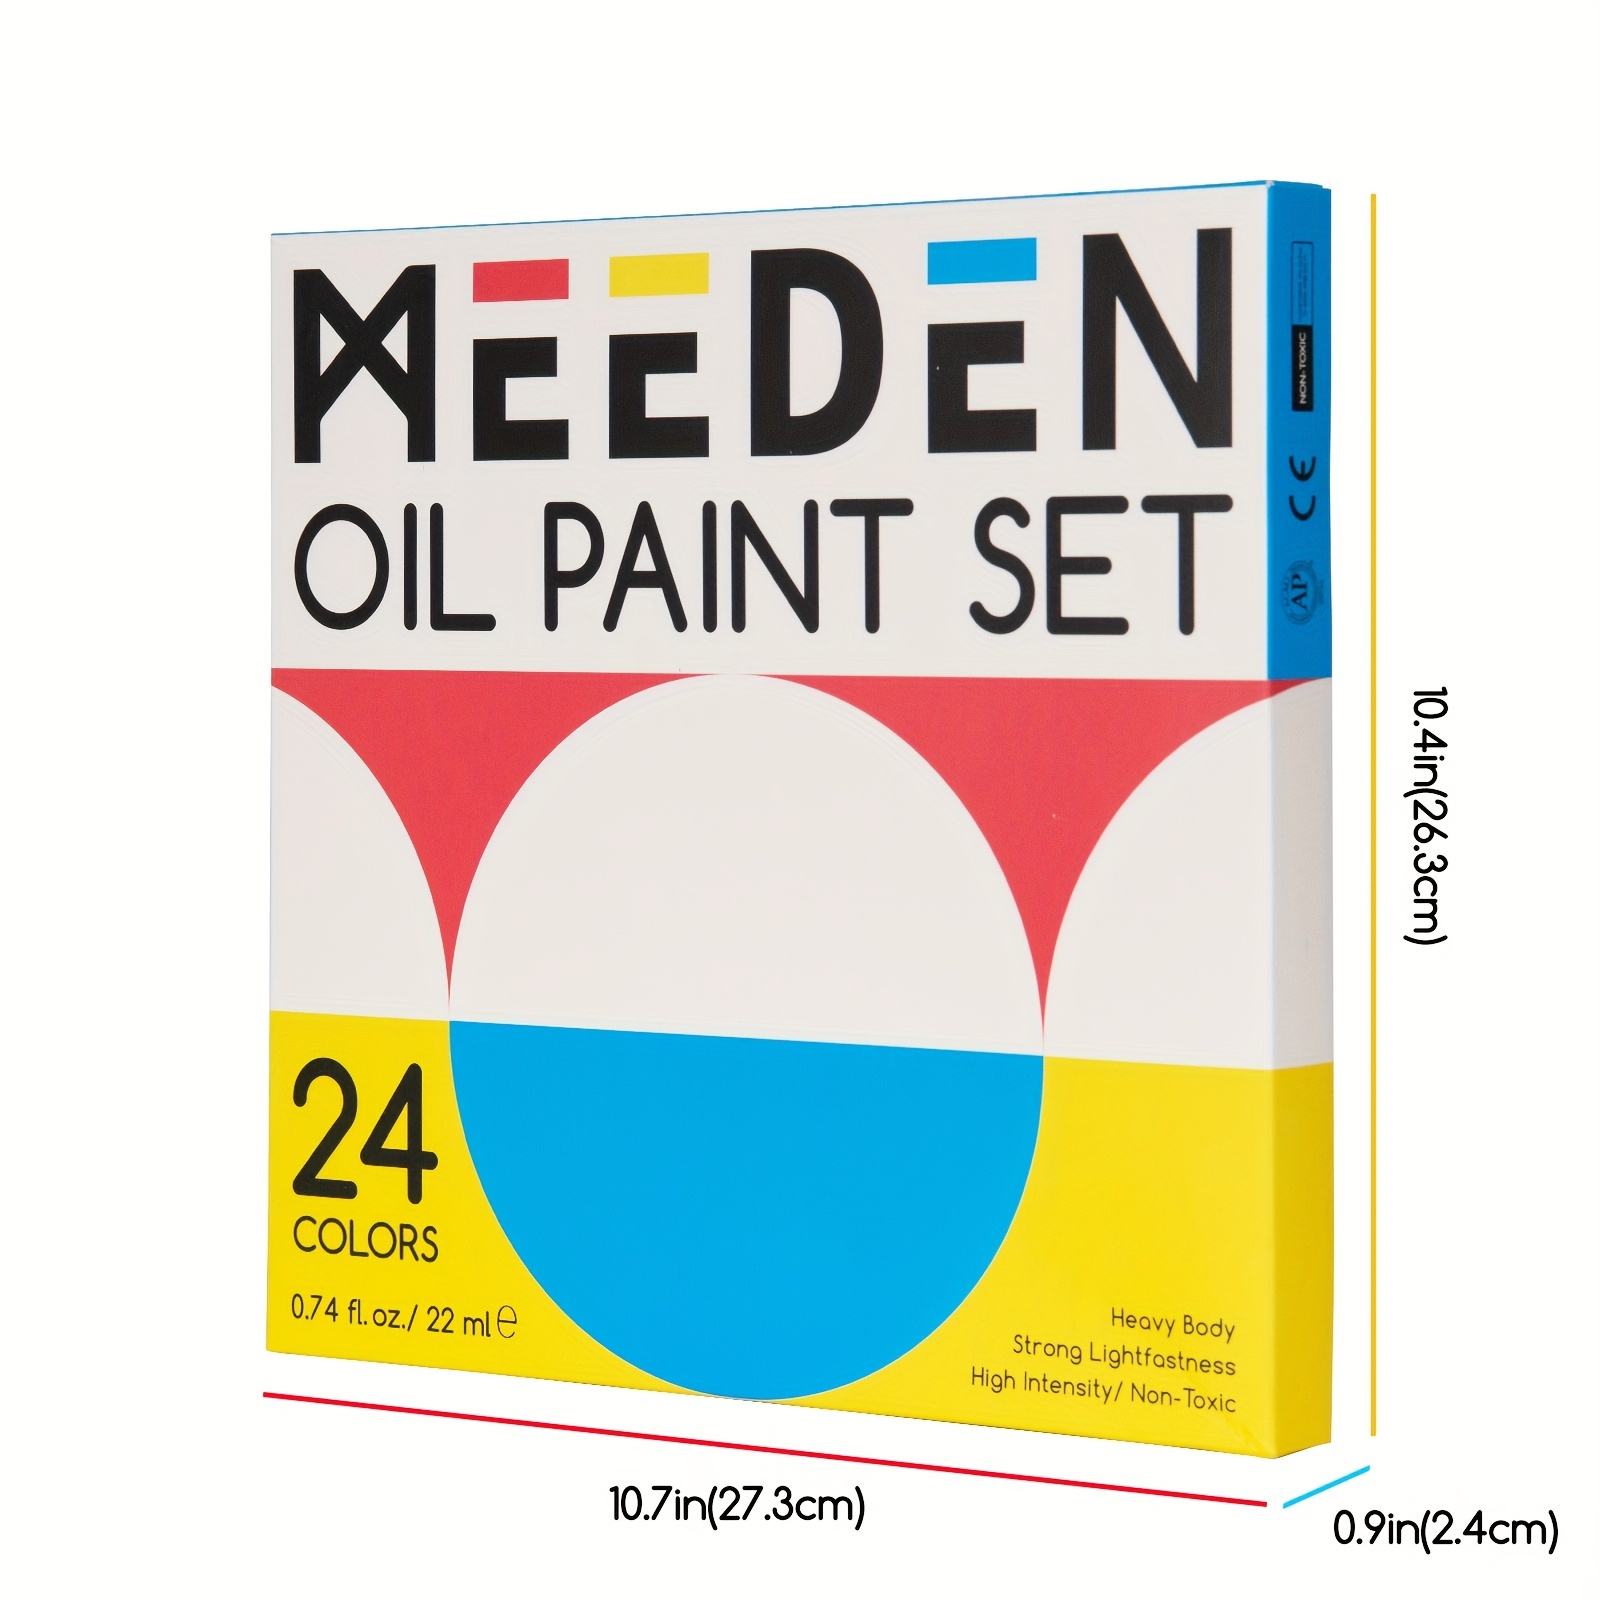 Meeden Oil Paint Set, 7 Colors 100Ml/3.38 Oz Large Oil Paints Tubes, 2X  Titanium White, Heavy Body Oil Based Oil Paints For Canvas Painting,  Non-Toxic Art Paints Colors For Professional Studio Artists